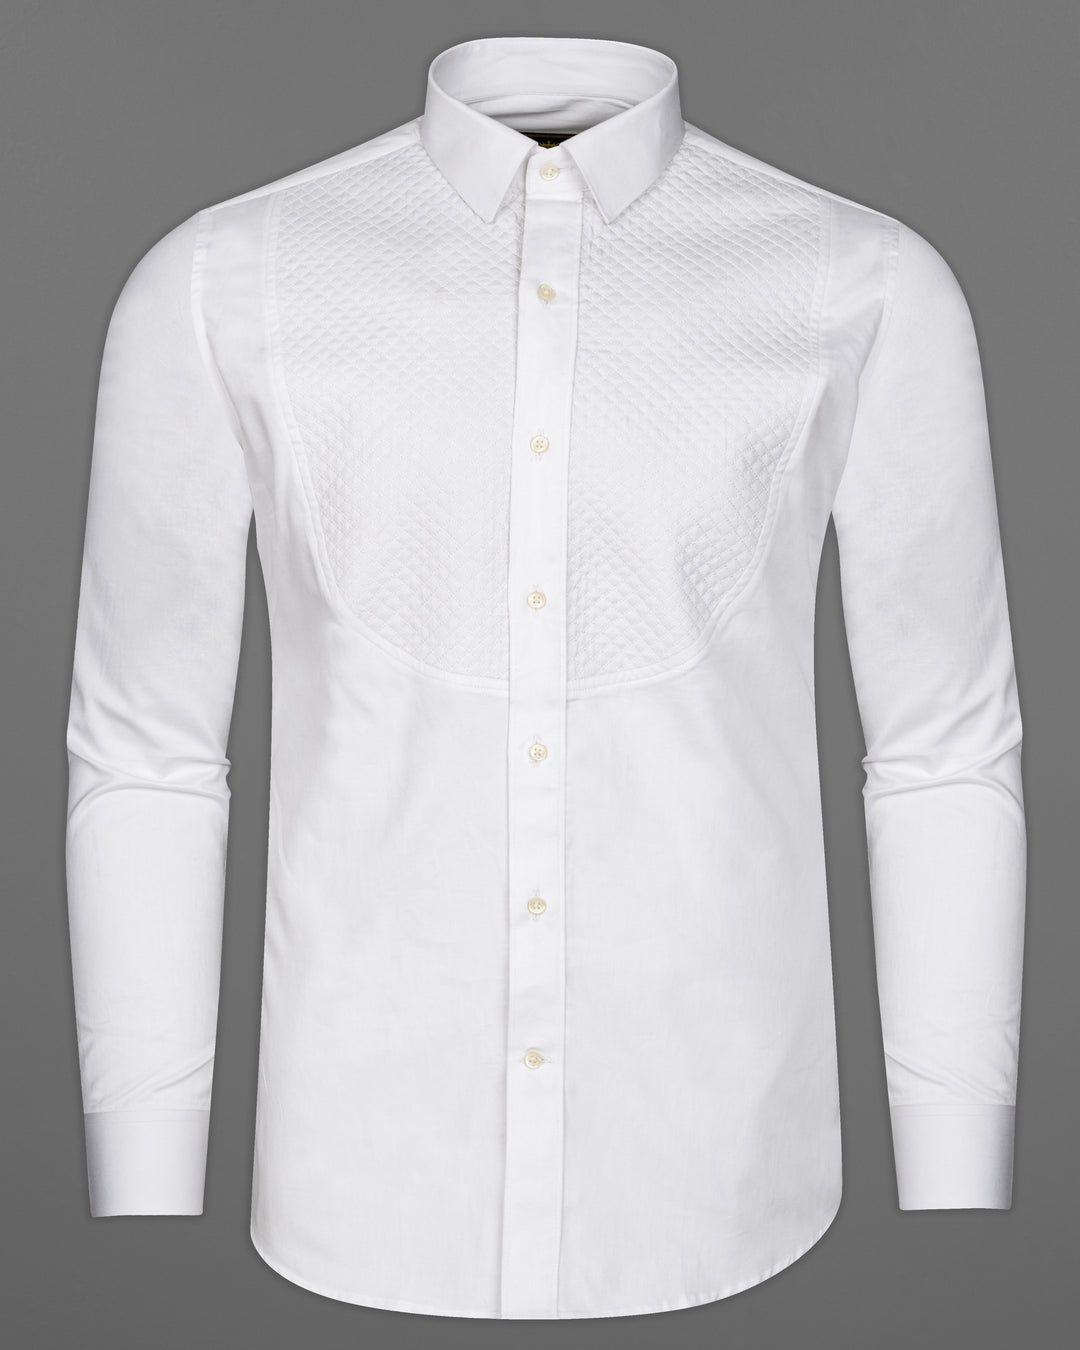 White shirts matching pant ideas | Combination pants, White shirt men, White  pants men